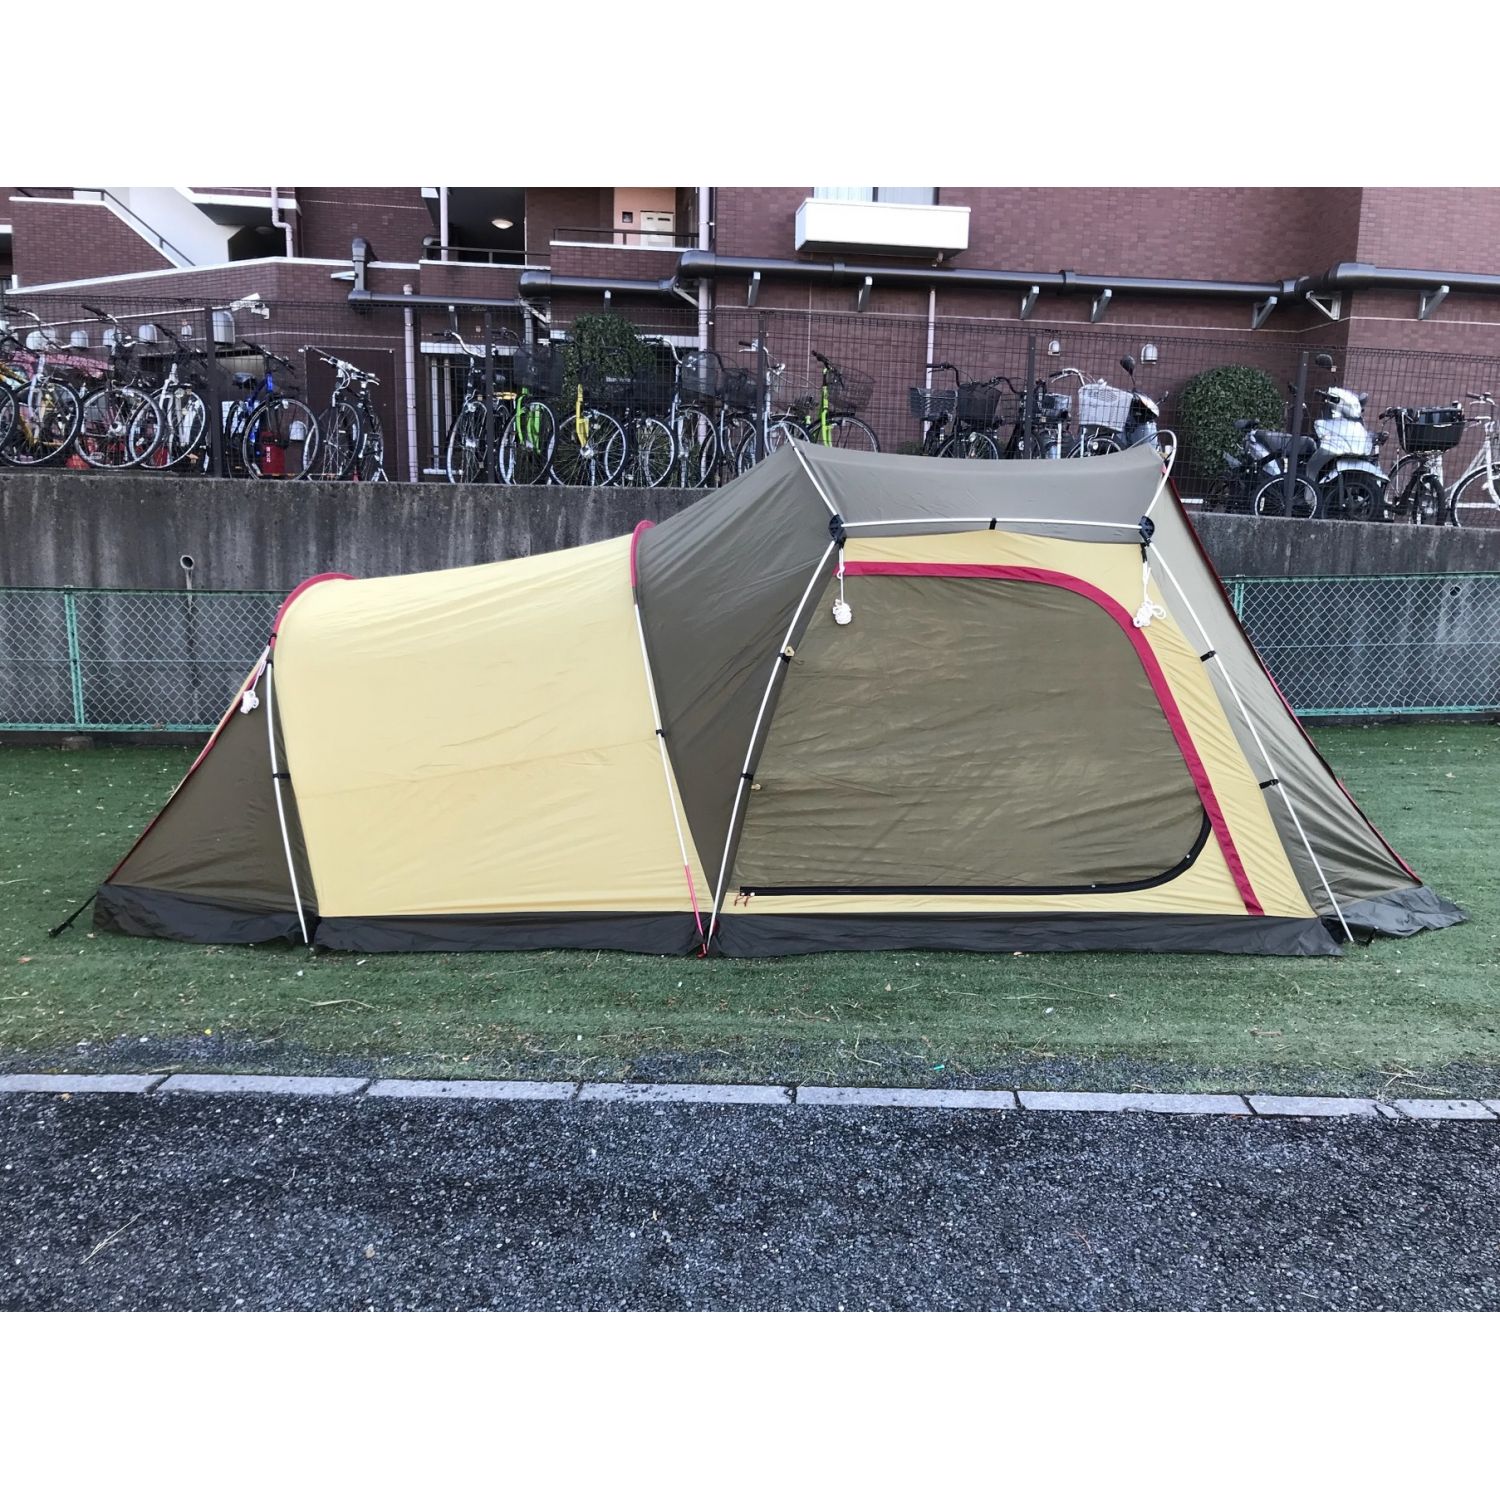 OGAWA CAMPAL (オガワキャンパル) ツールームテント 約180×210×140 